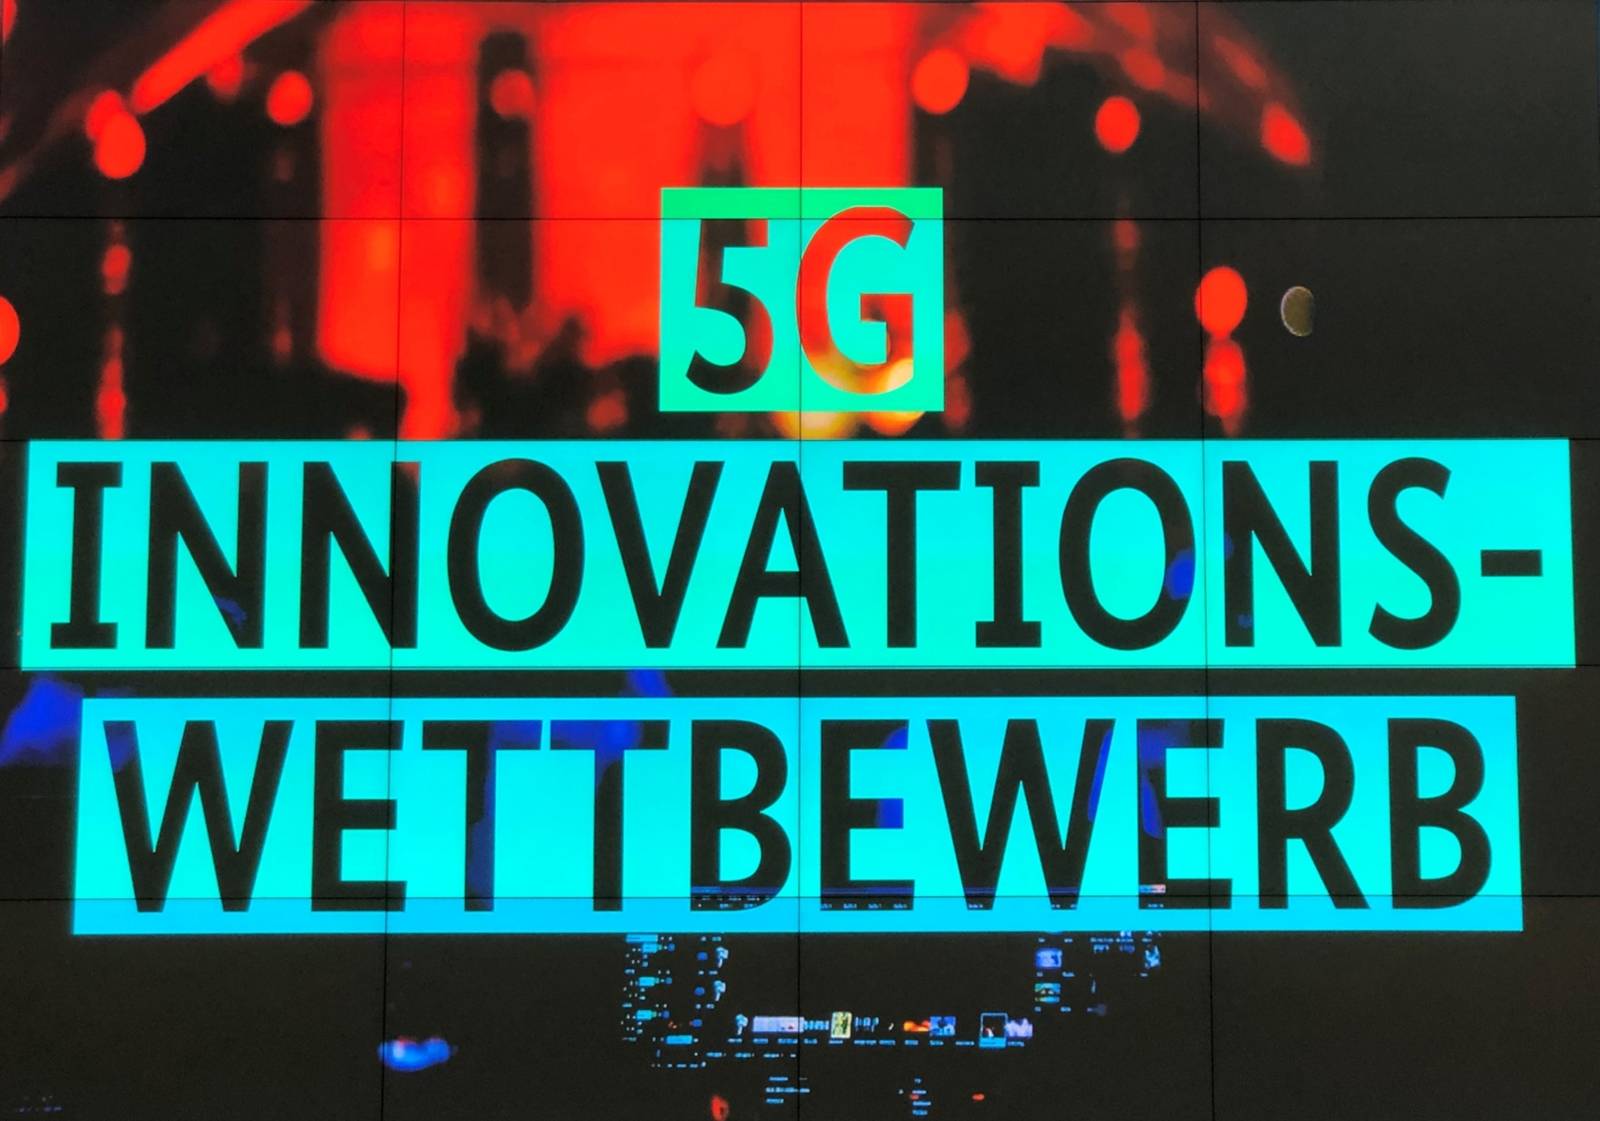 Grafik, in der "5G Innovationswettbewerb" steht. 